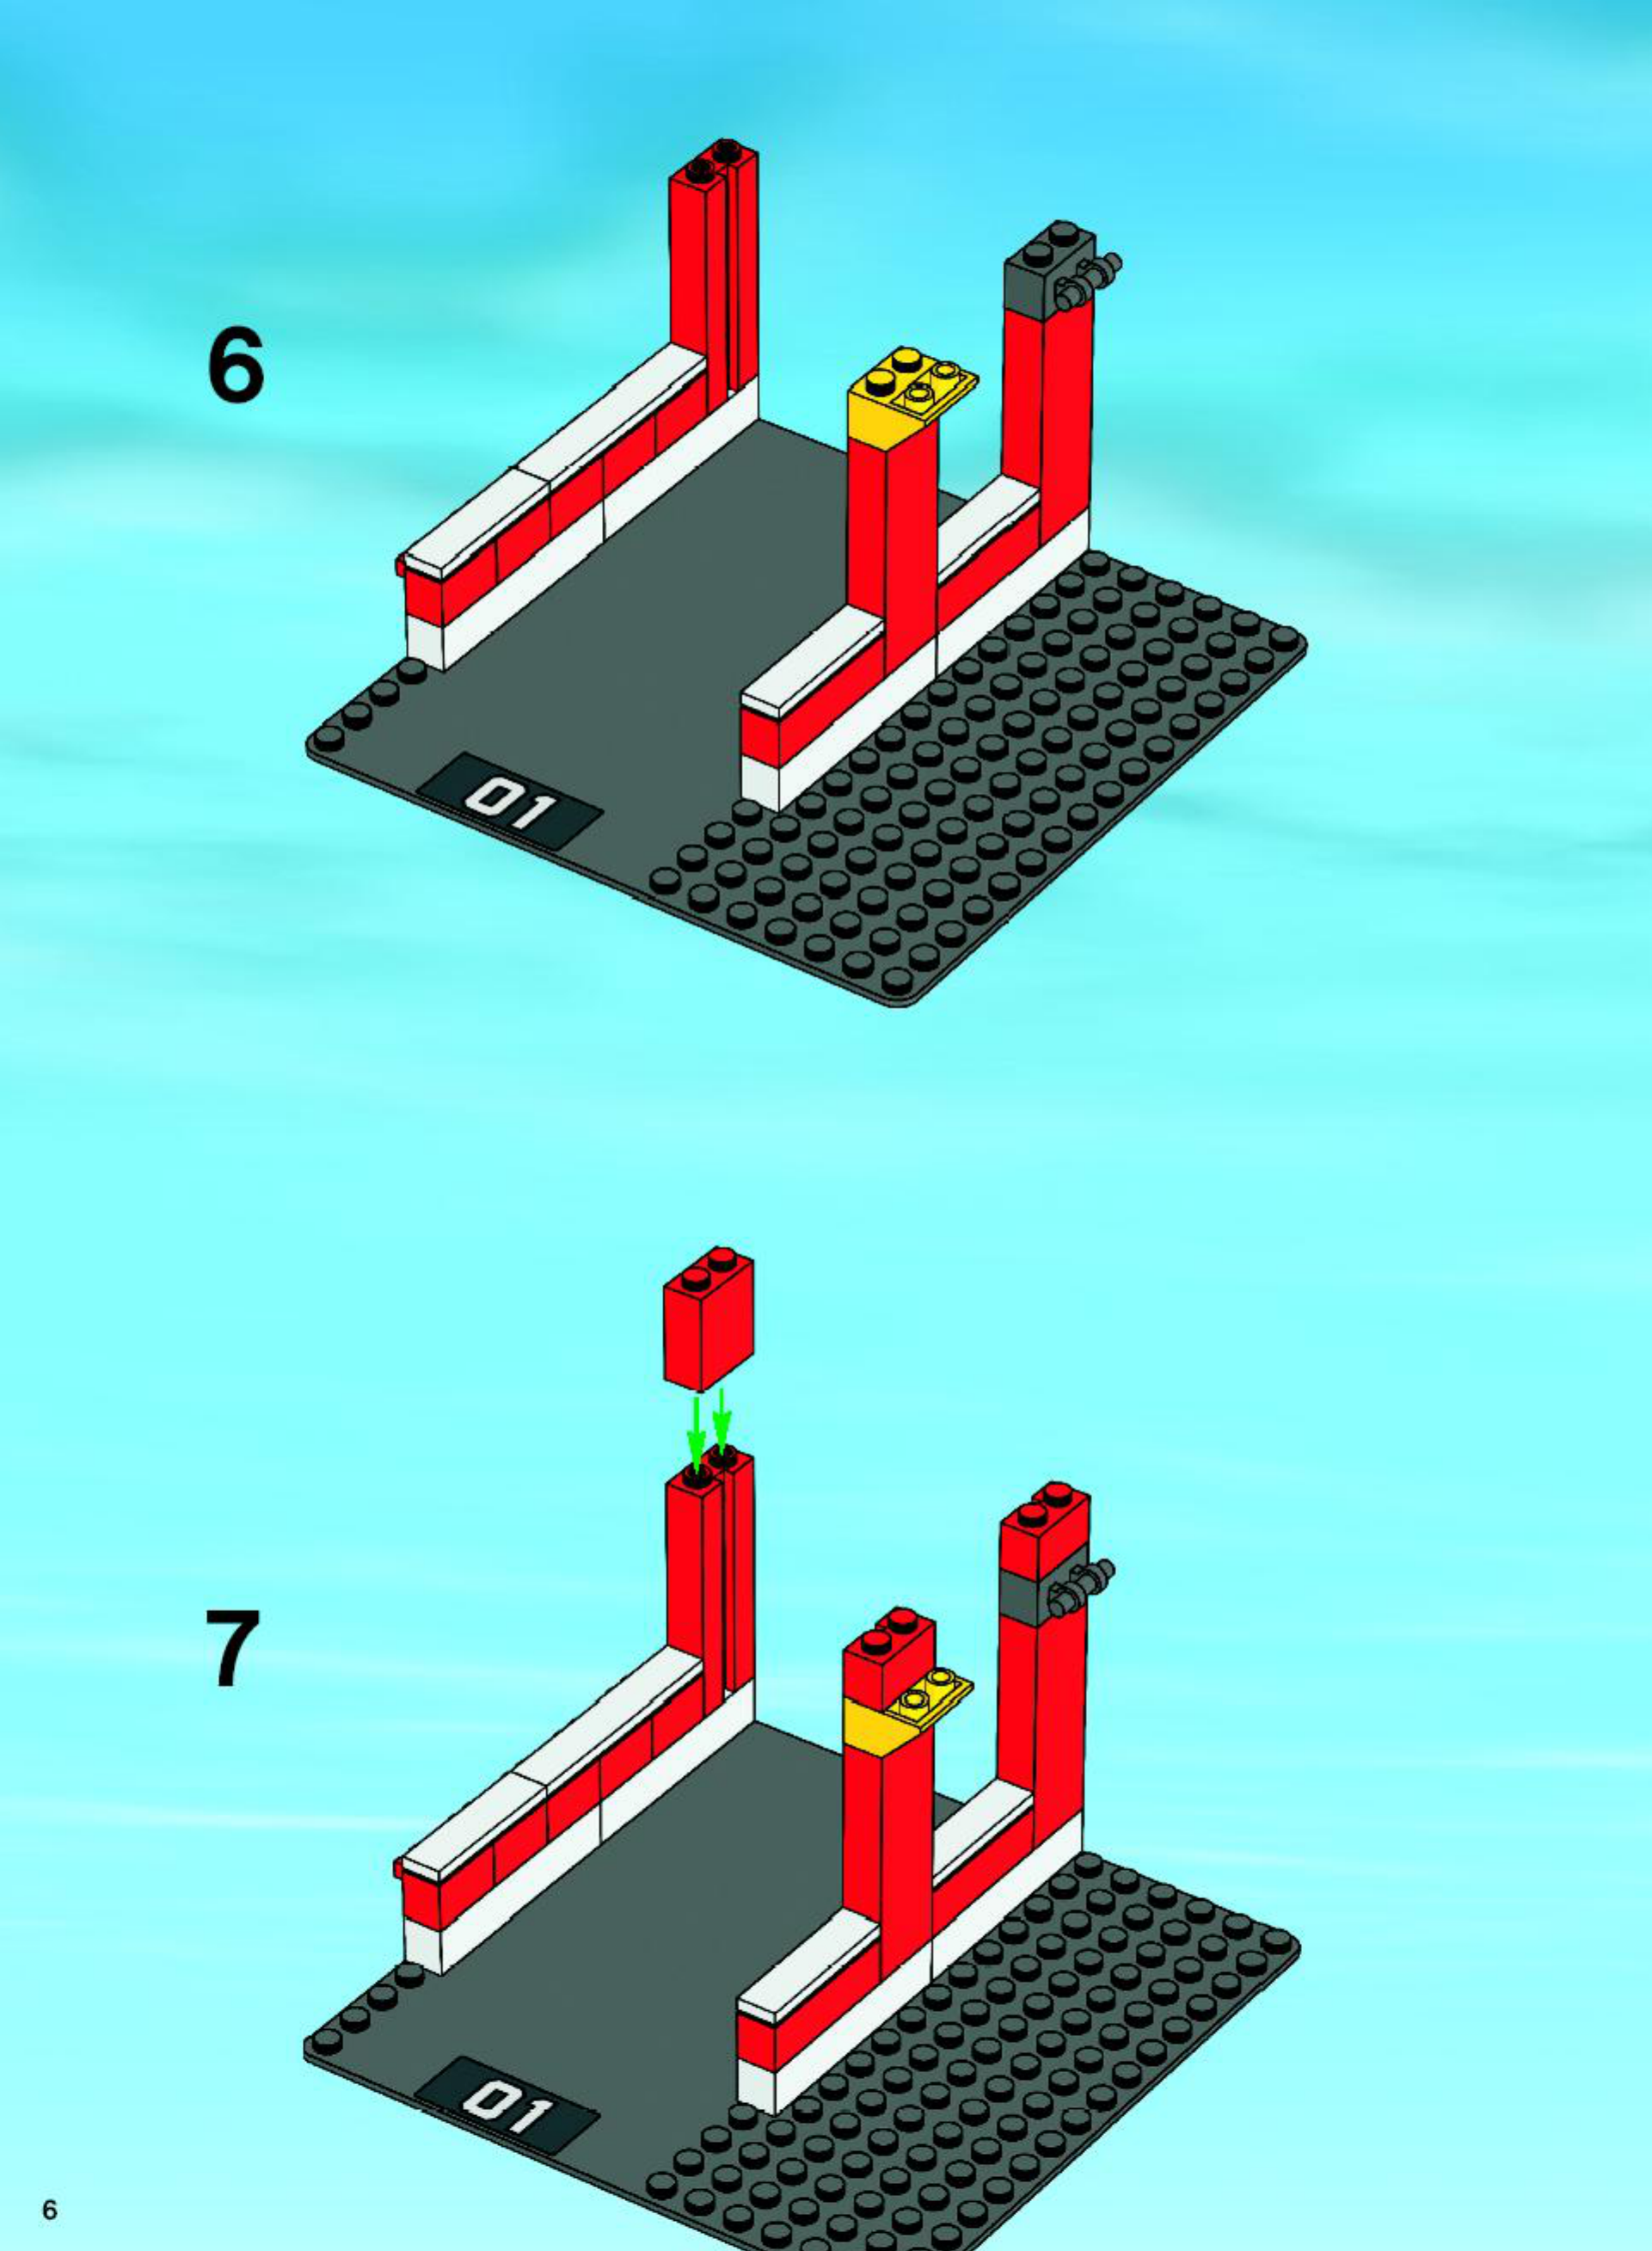 Bedienungsanleitung Lego City Fire - CITY Fire 7208 (Seite 1 von 64) Englisch, Holländisch, Dänisch, Französisch, Italienisch, Spanisch, Polnisch, Türkisch, Schwedisch, Norwegisch, Finnisch)